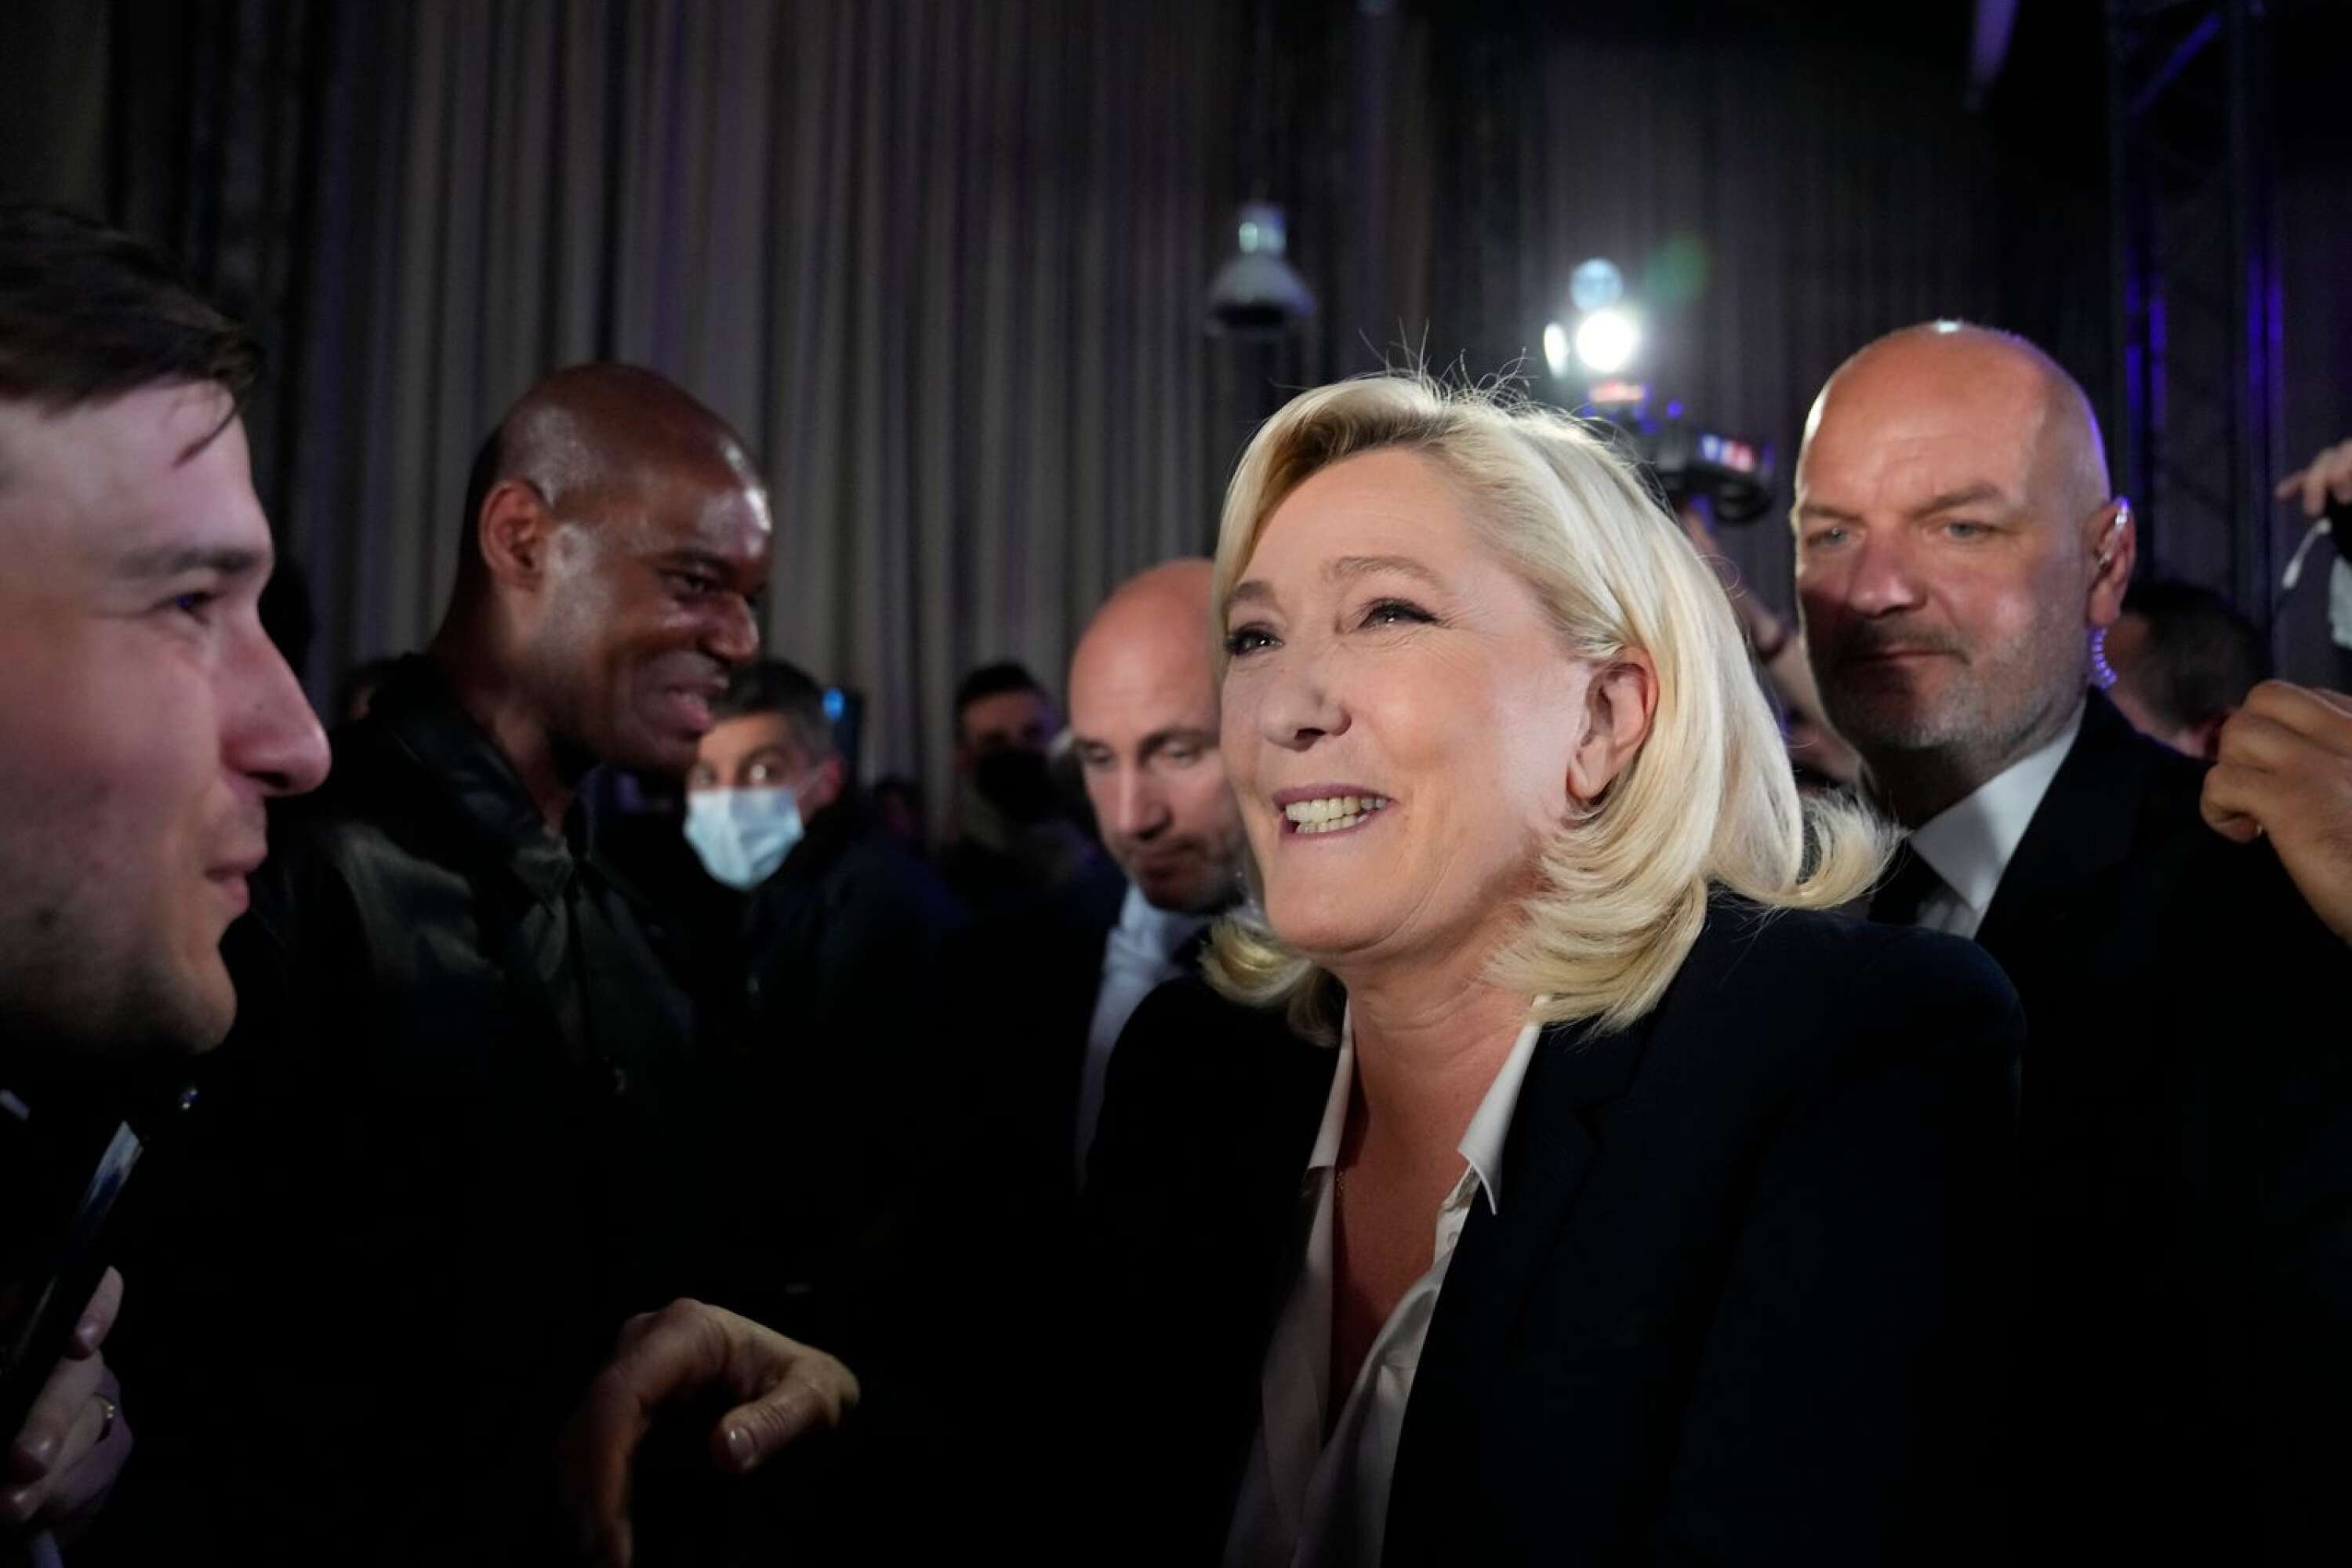 Marine Le Pen utmanar Emmanuel Macron om presidentposten i den avgörande andra omgången den 24 april.